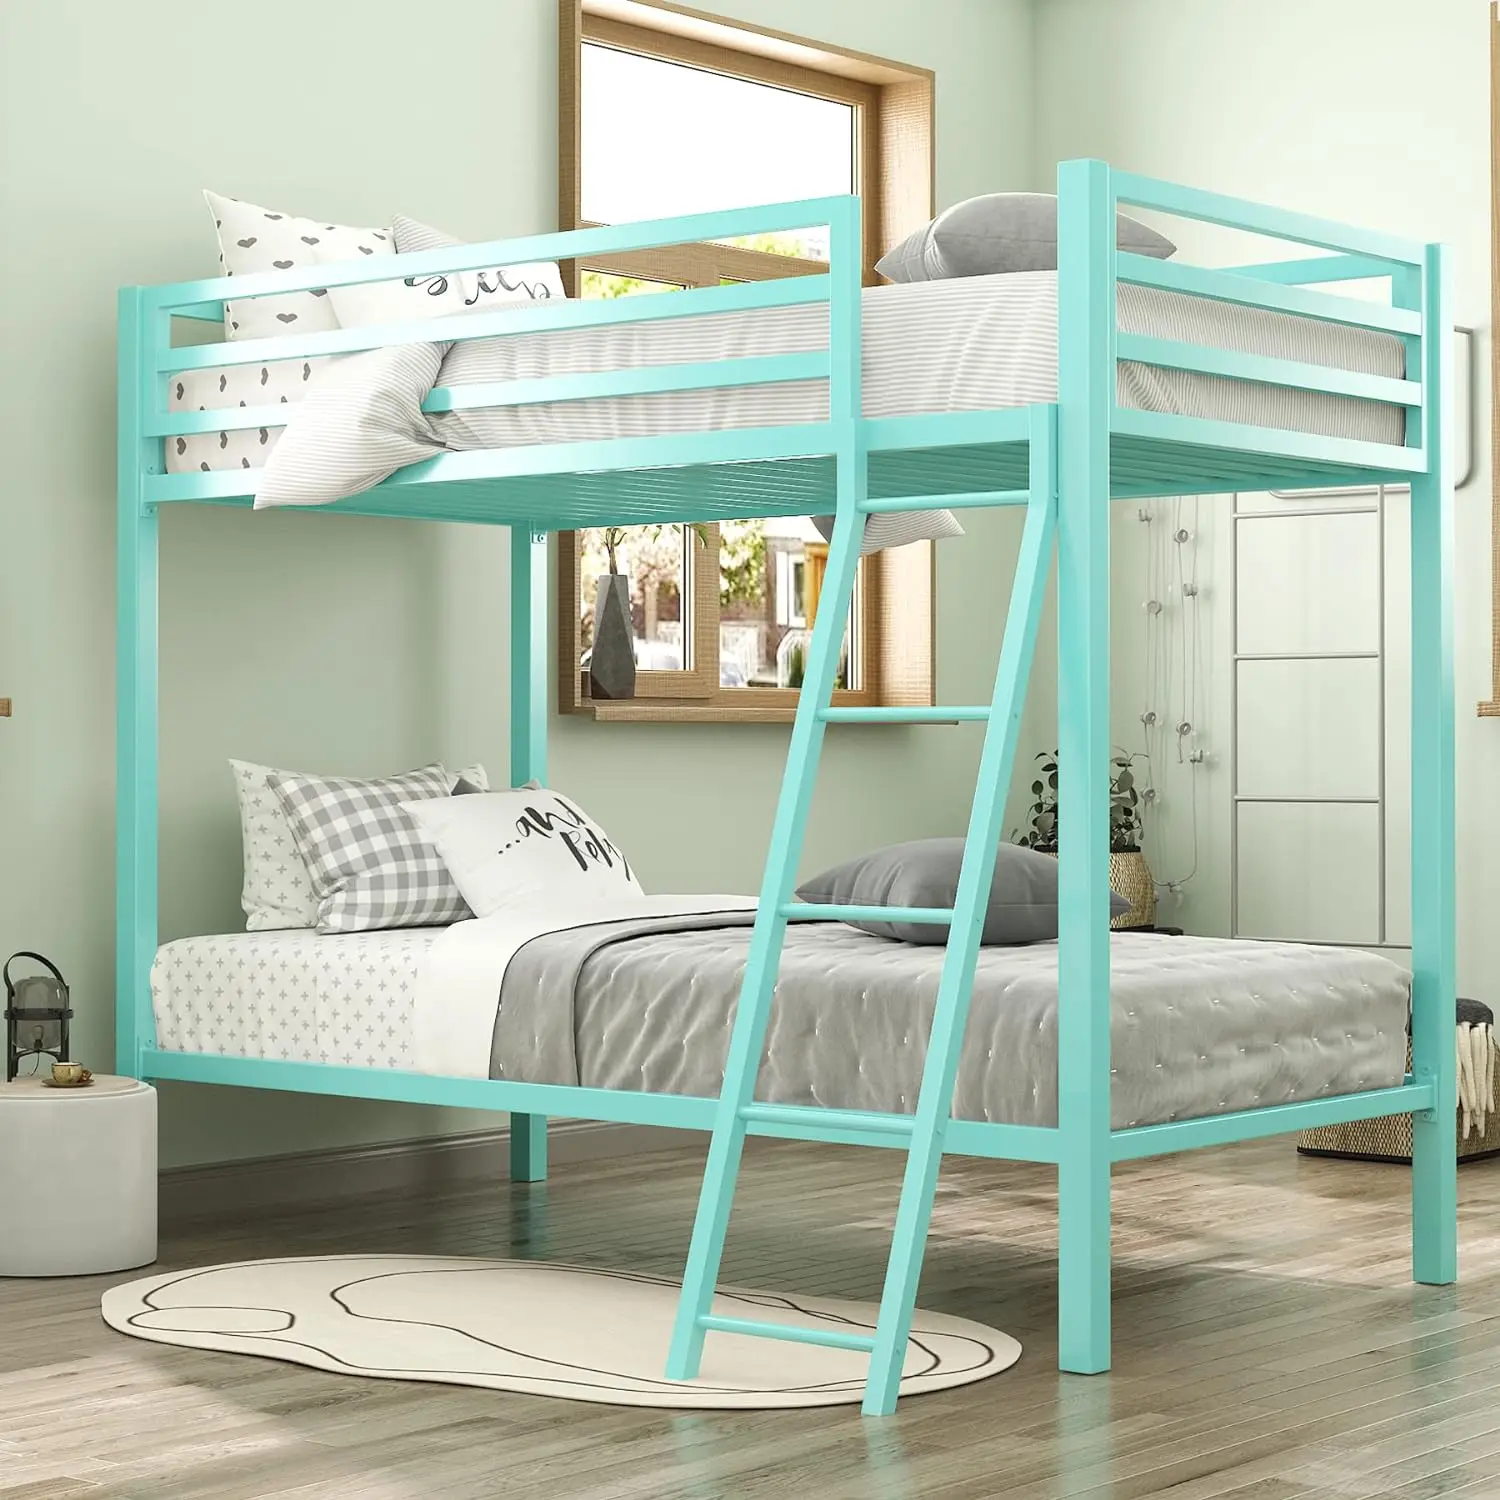 

Двухъярусная кровать IMUsee, двухъярусная кровать с лестницей для подростков, металлические двухъярусные кровати с безопасным Полноразмерным поручнем, компактная